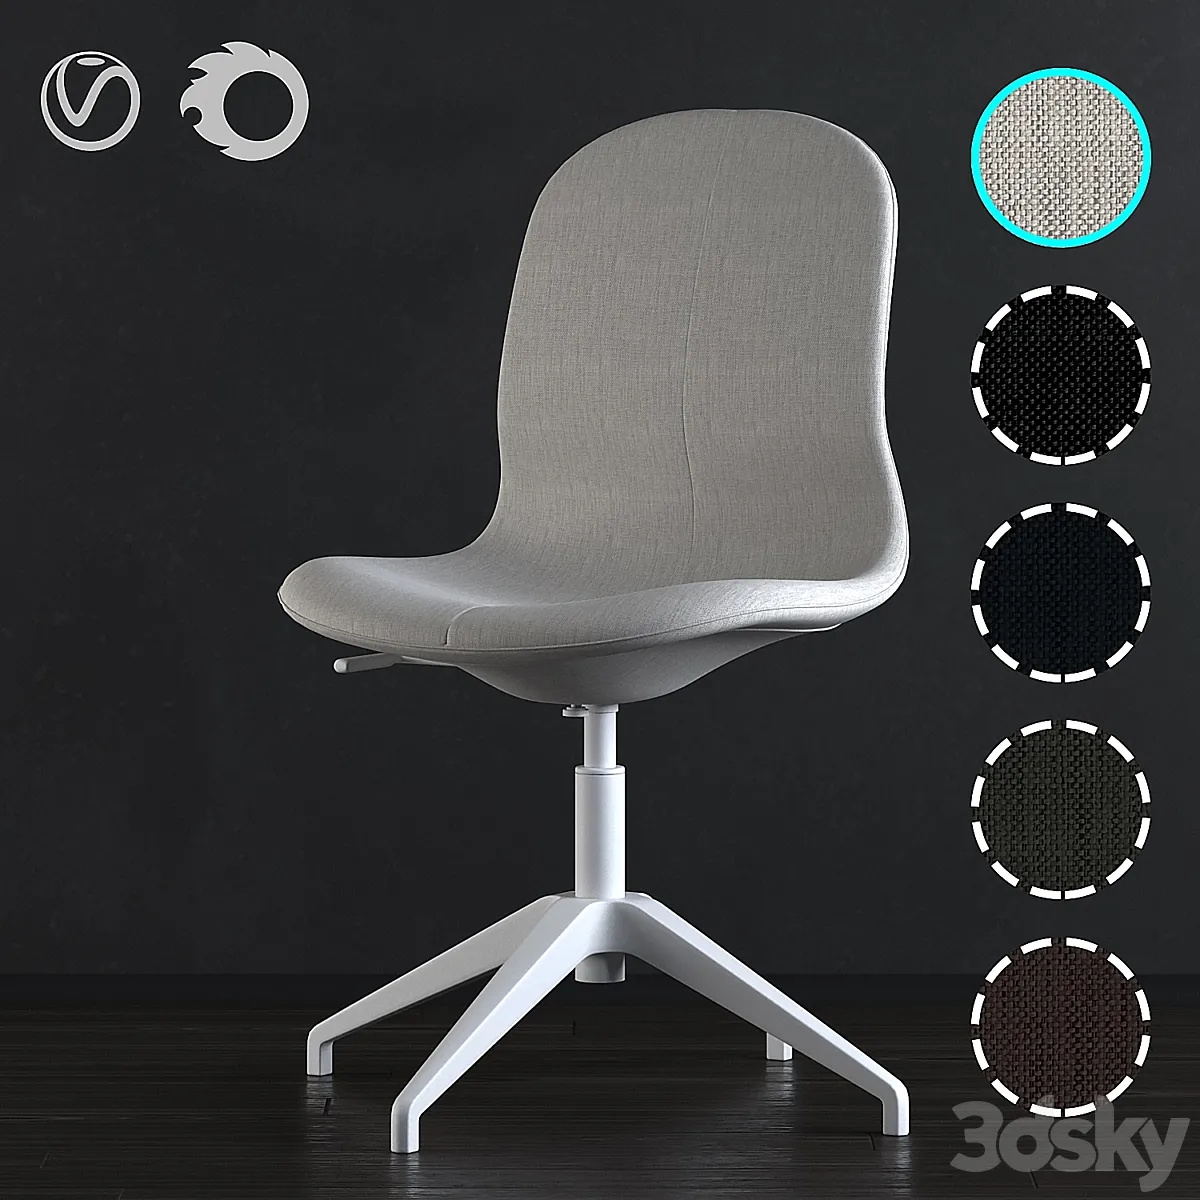 Ikea LANGFJALL chair 02 - Chair - 3D model